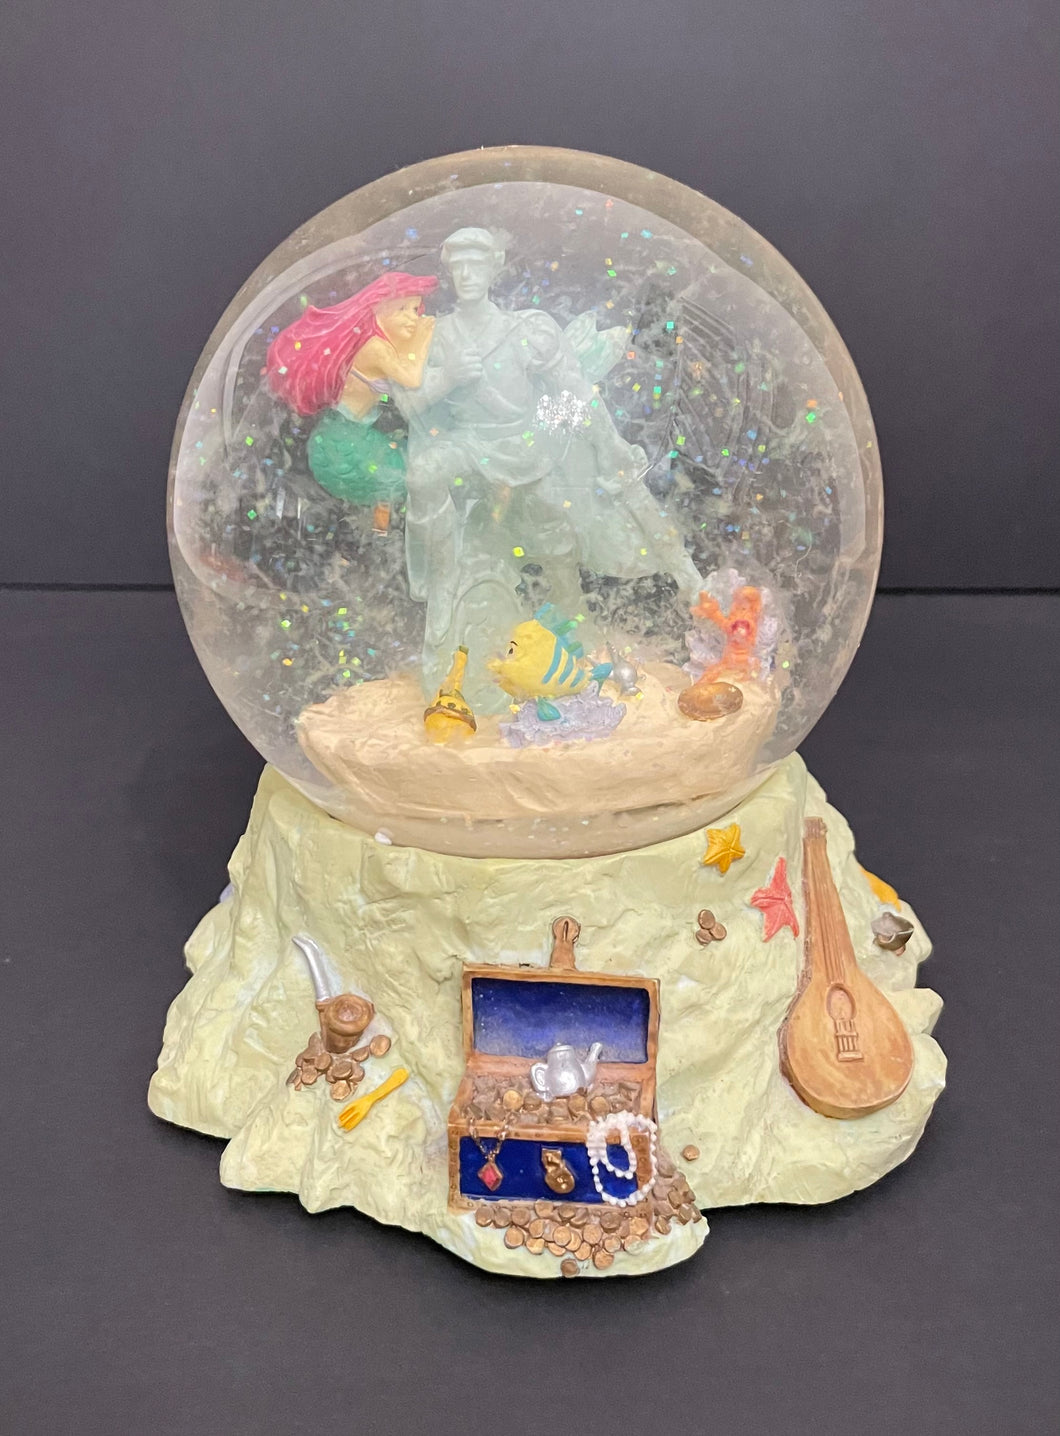 Walt Disney “The Little Mermaid” Retired Snowglobe